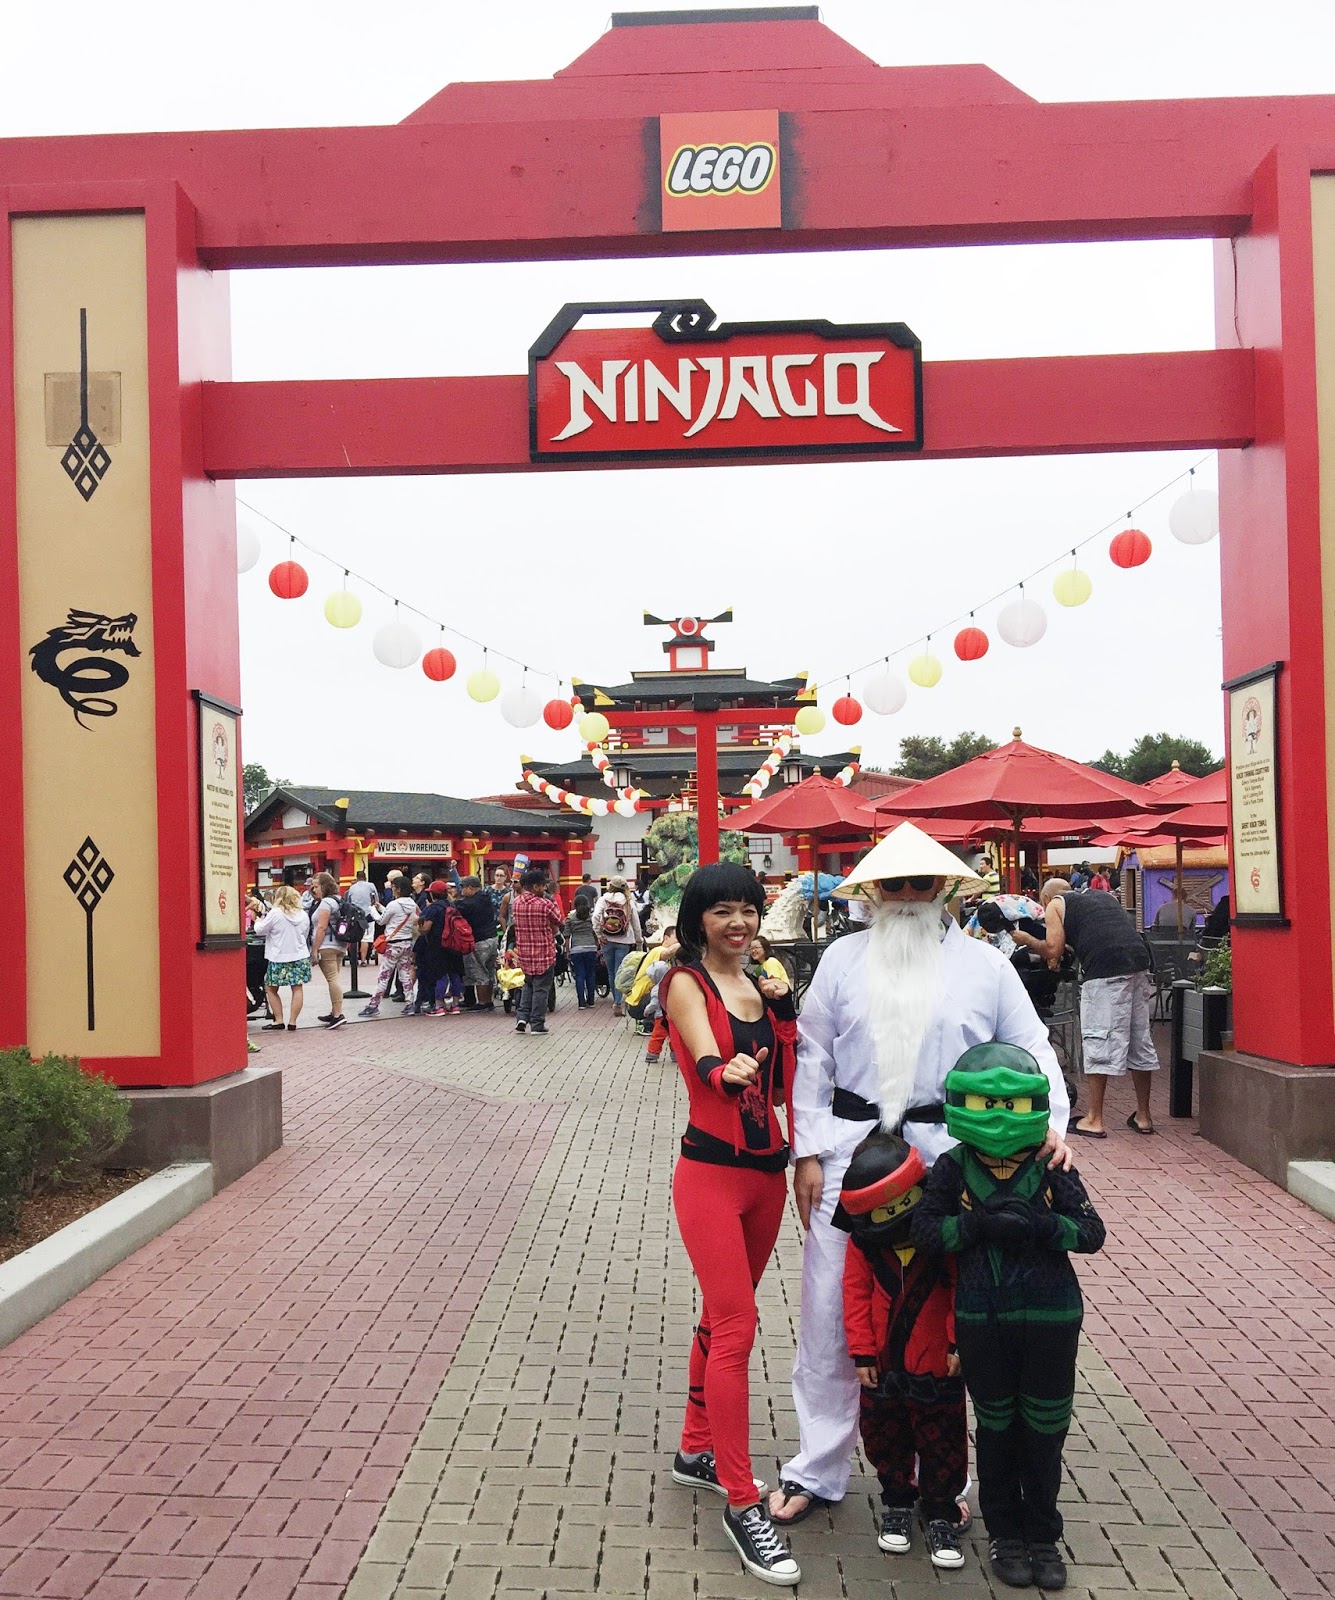 Green Ninja Lloyd and Sensei Wu Costume